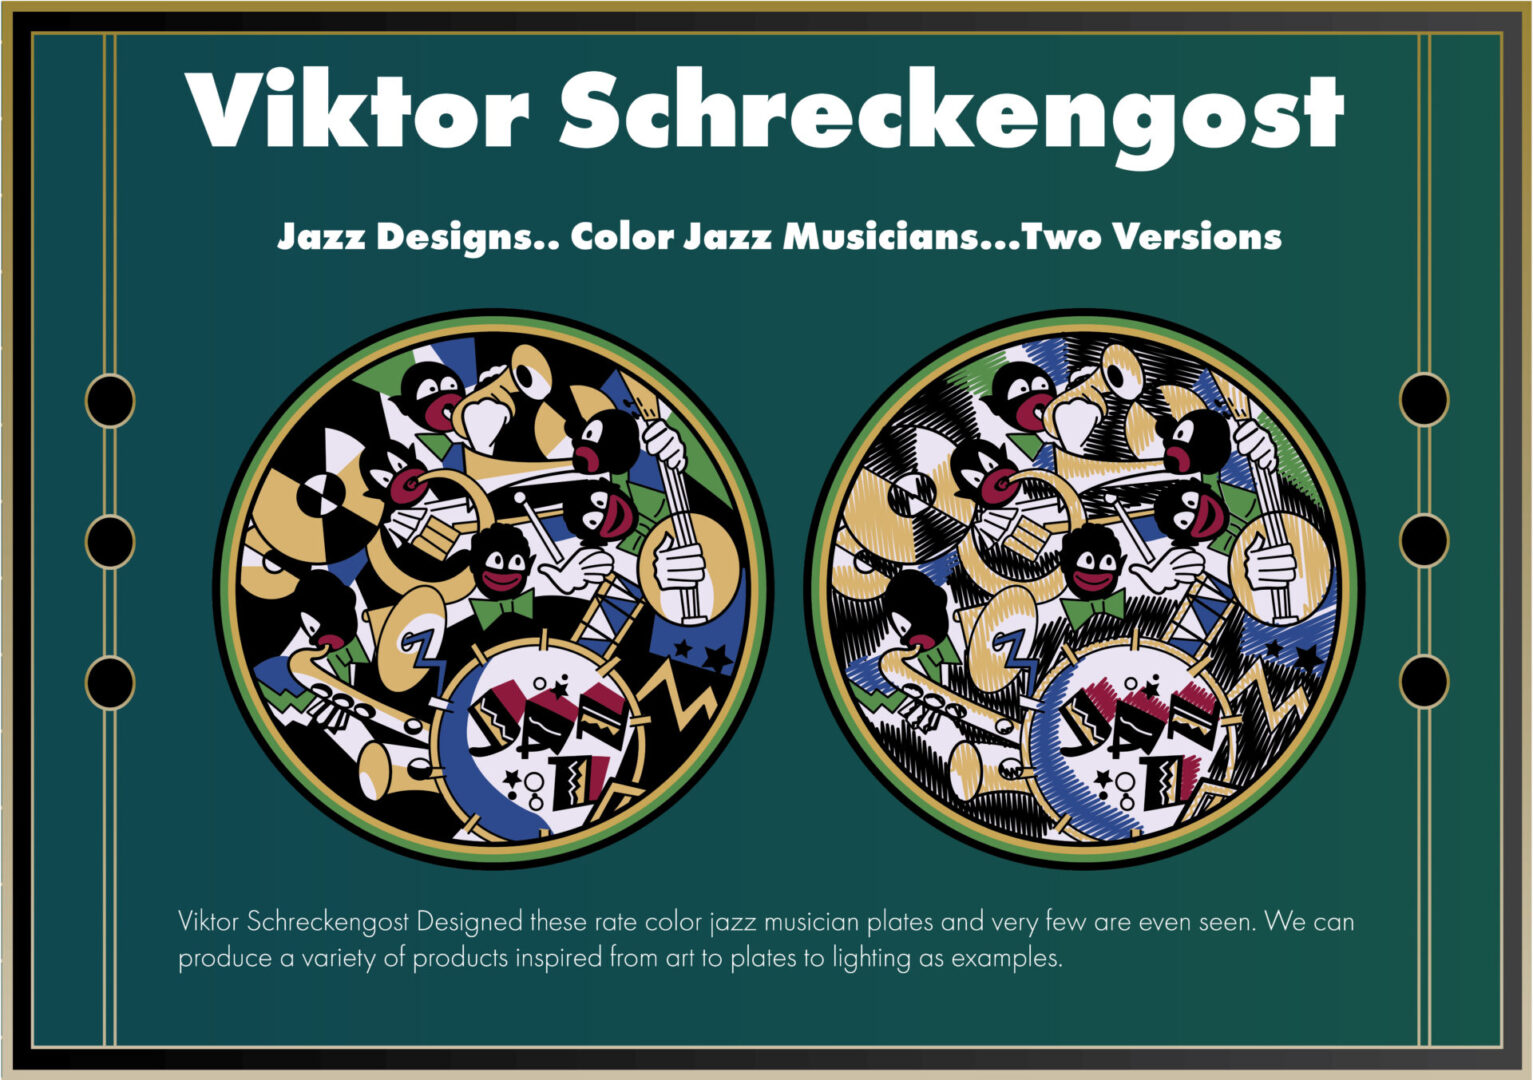 Viktor Schreckengost Jazz Designs with Color Jazz Musicians